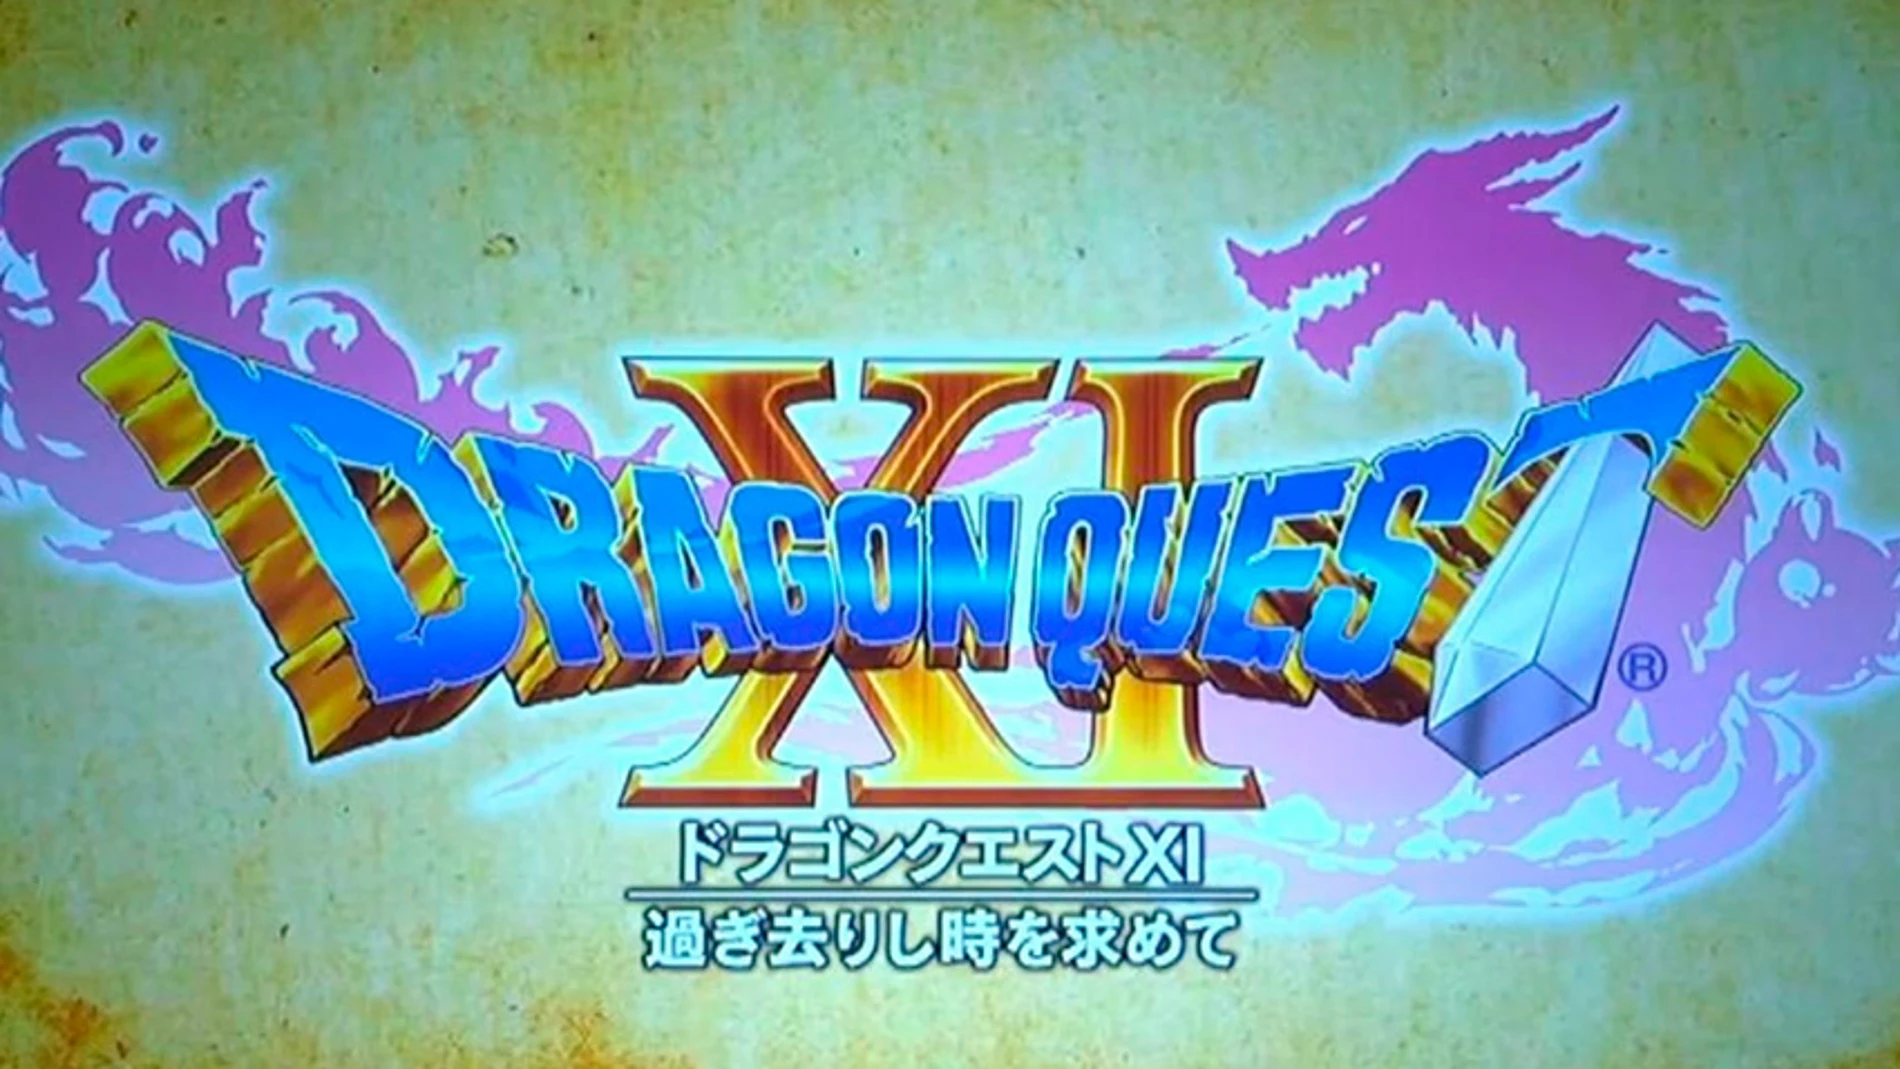 Square Enix presenta Dragon Quest XI para PlayStation 4 y Nintendo 3DS